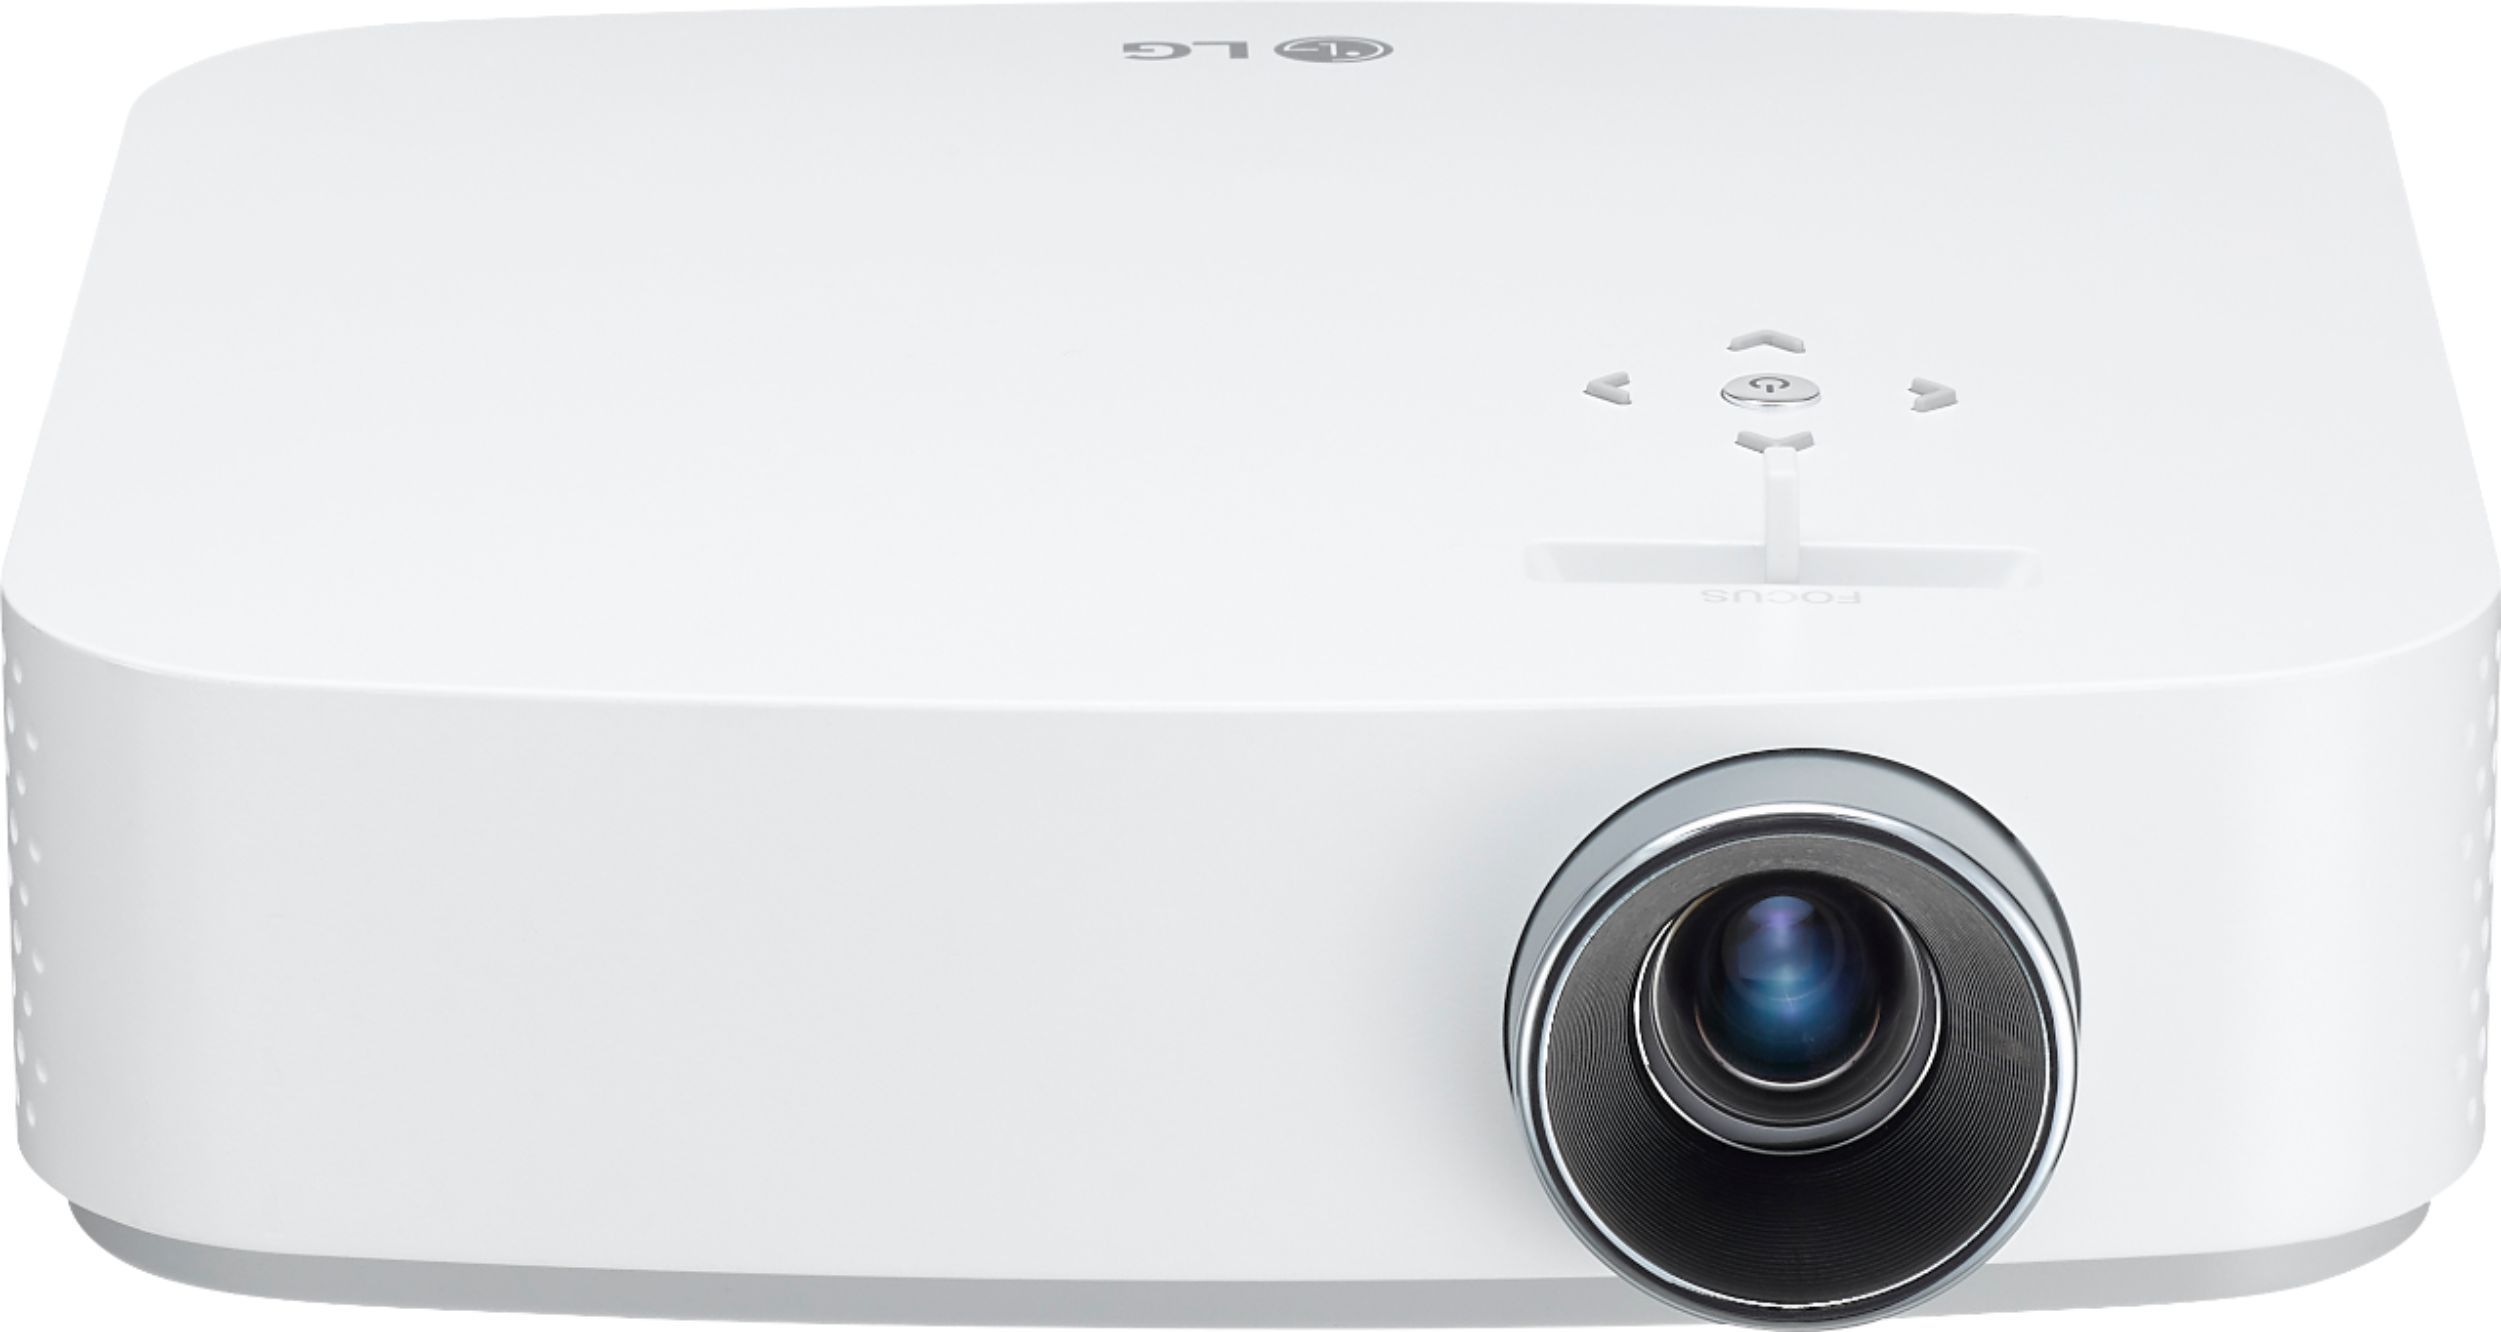 LG PF50KA 1080p Wireless Smart DLP Portable Projector White PF50KA - Best Buy | Best Buy U.S.